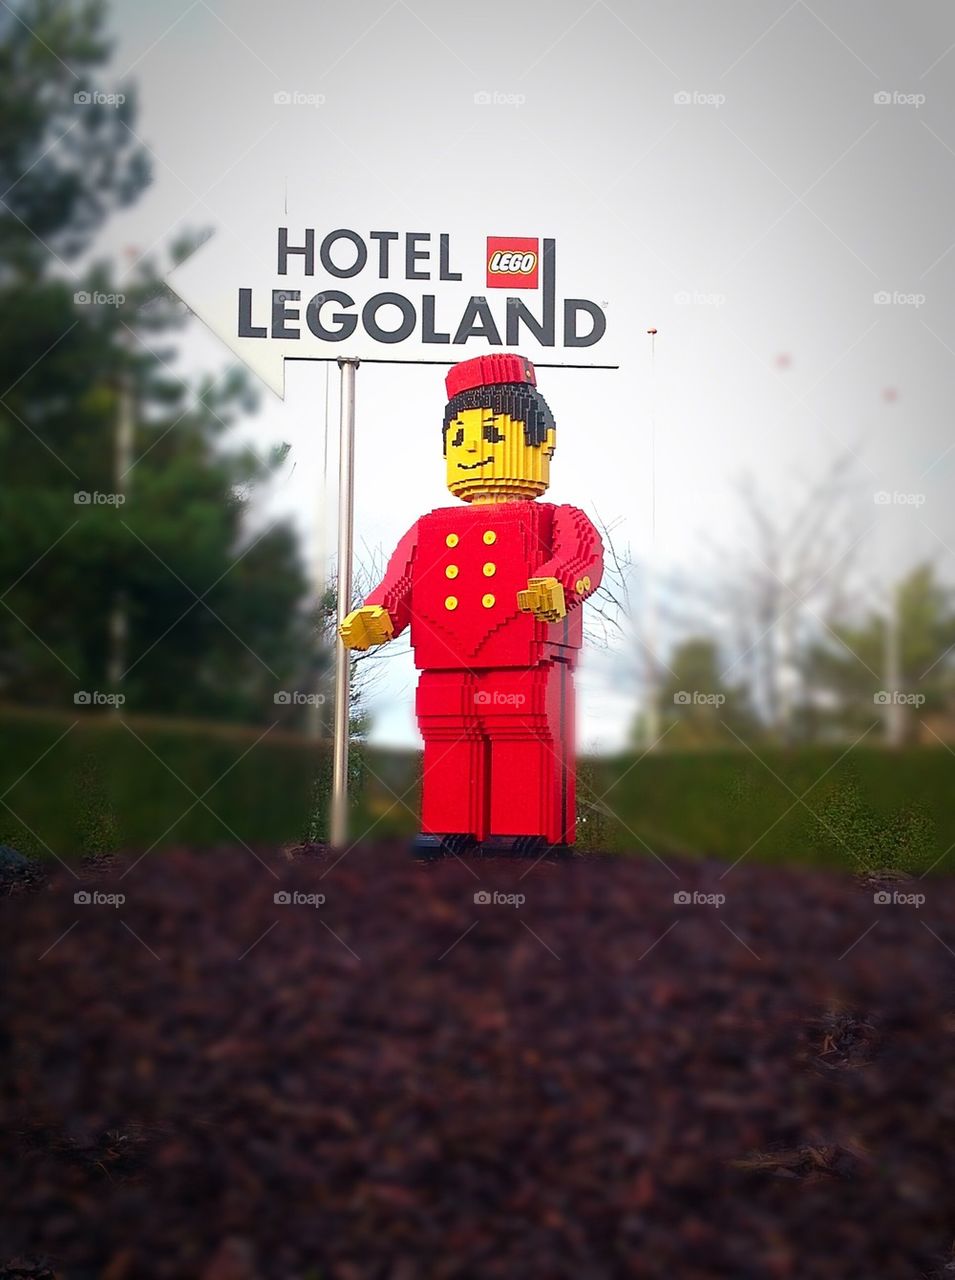 LegoLand Hotel